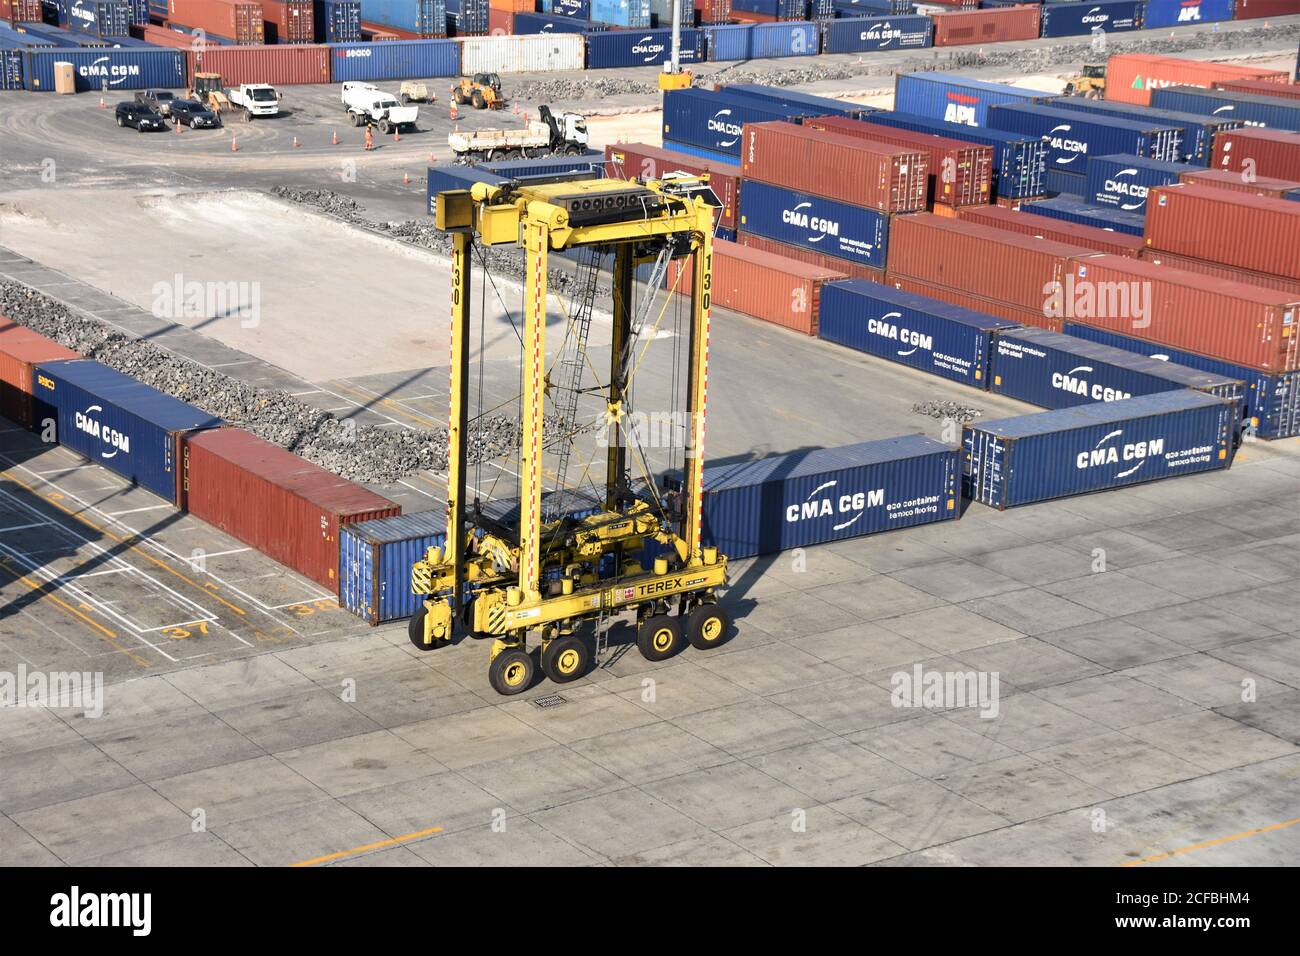 Un carrier a sella nel Kingston Freeport Terminal che passa vicino ai container. Il carrello a forche giallo è vuoto e si sposta verso le navi per il carico. Foto Stock